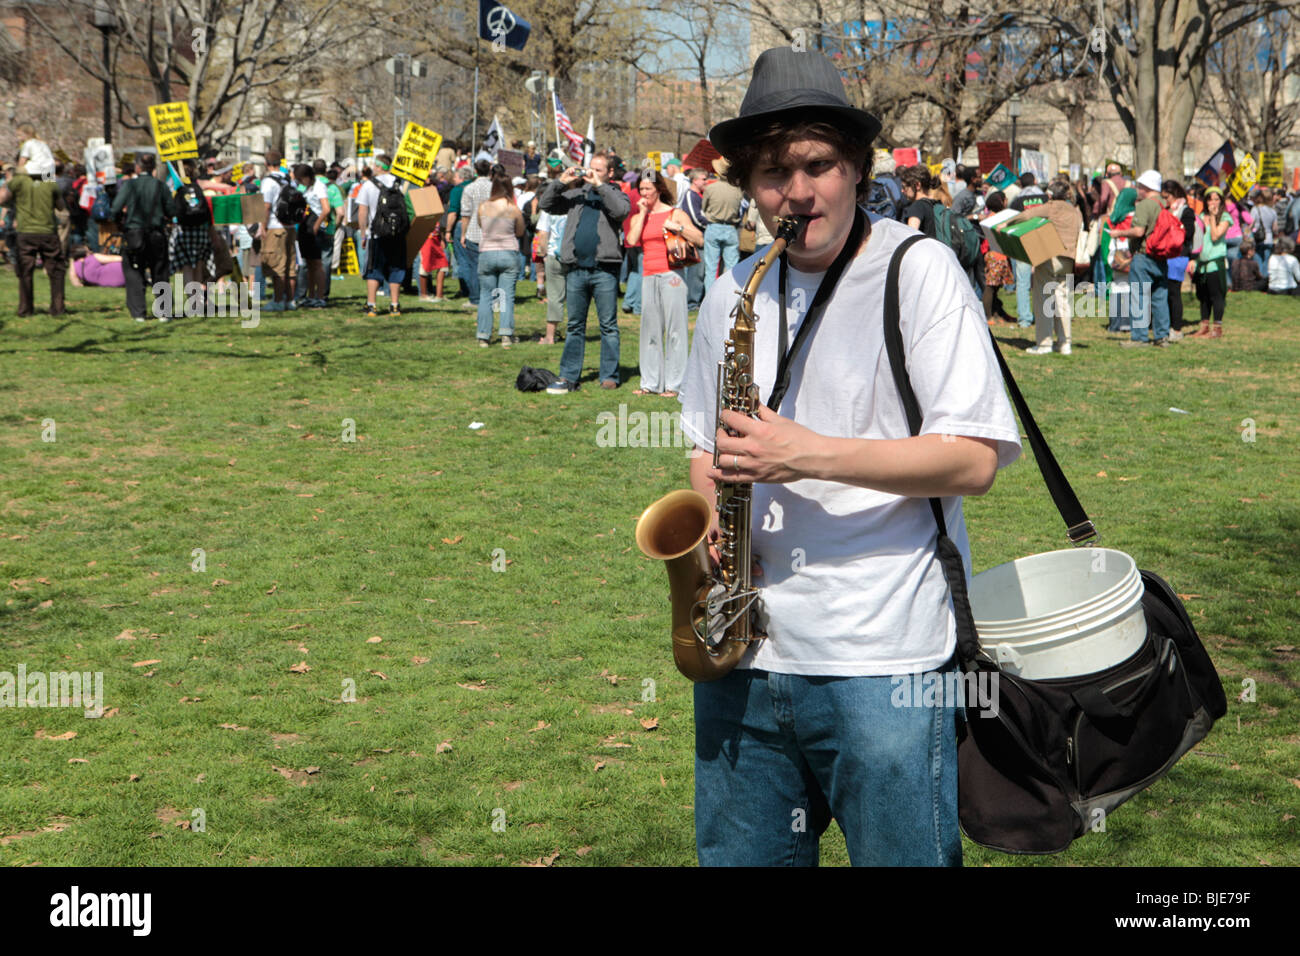 Street musician playing, 'Où vont les fleurs gone' au saxophone à Lafayette Square Park. Manifestation anti-guerre. Marche sur Washington. 20 mars, 2010 Banque D'Images